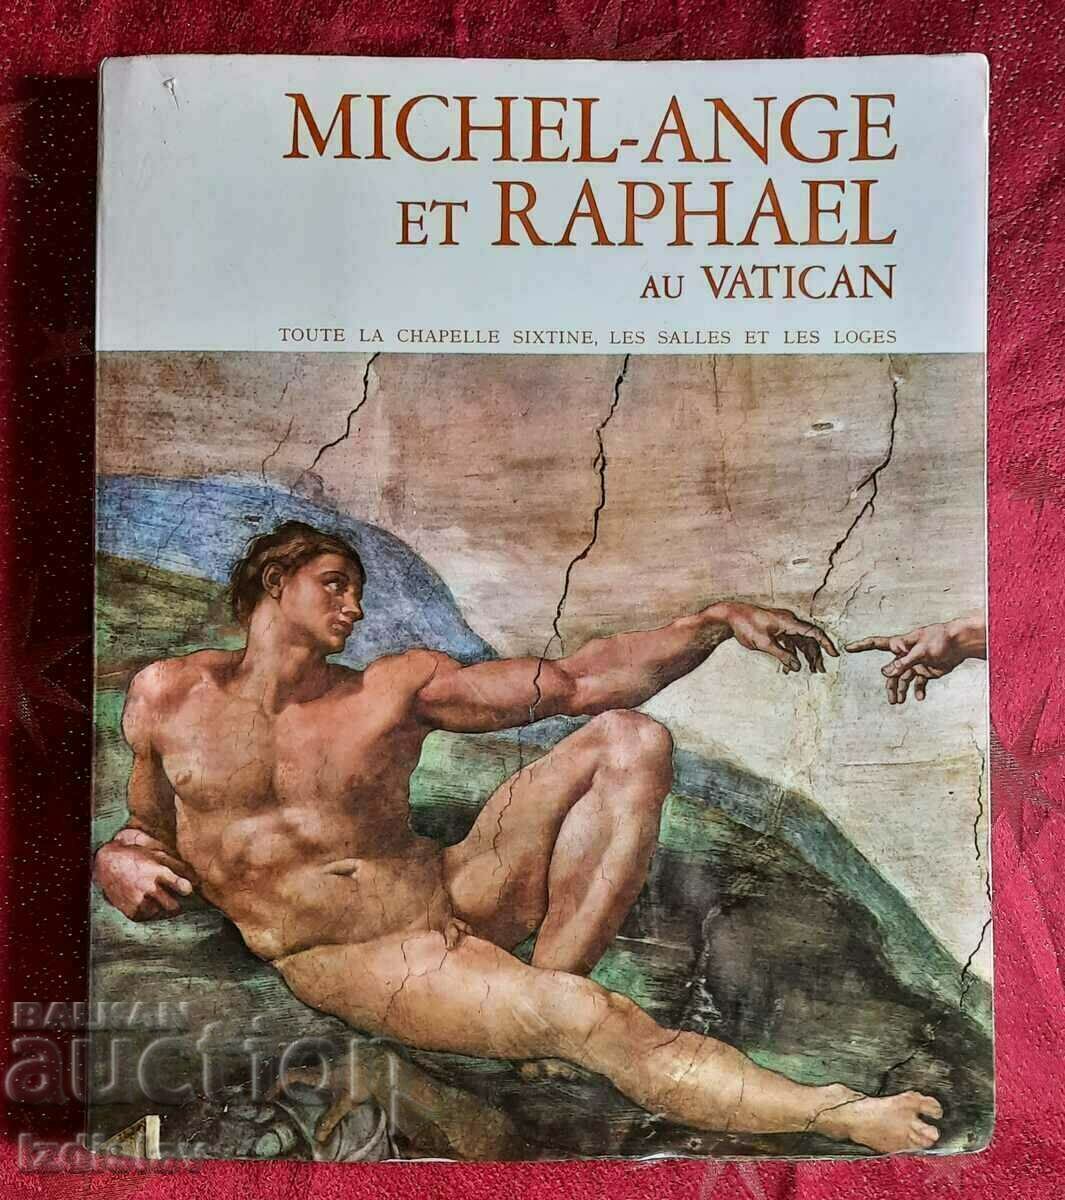 Луксозен албум за Микеланджело и Рафаело